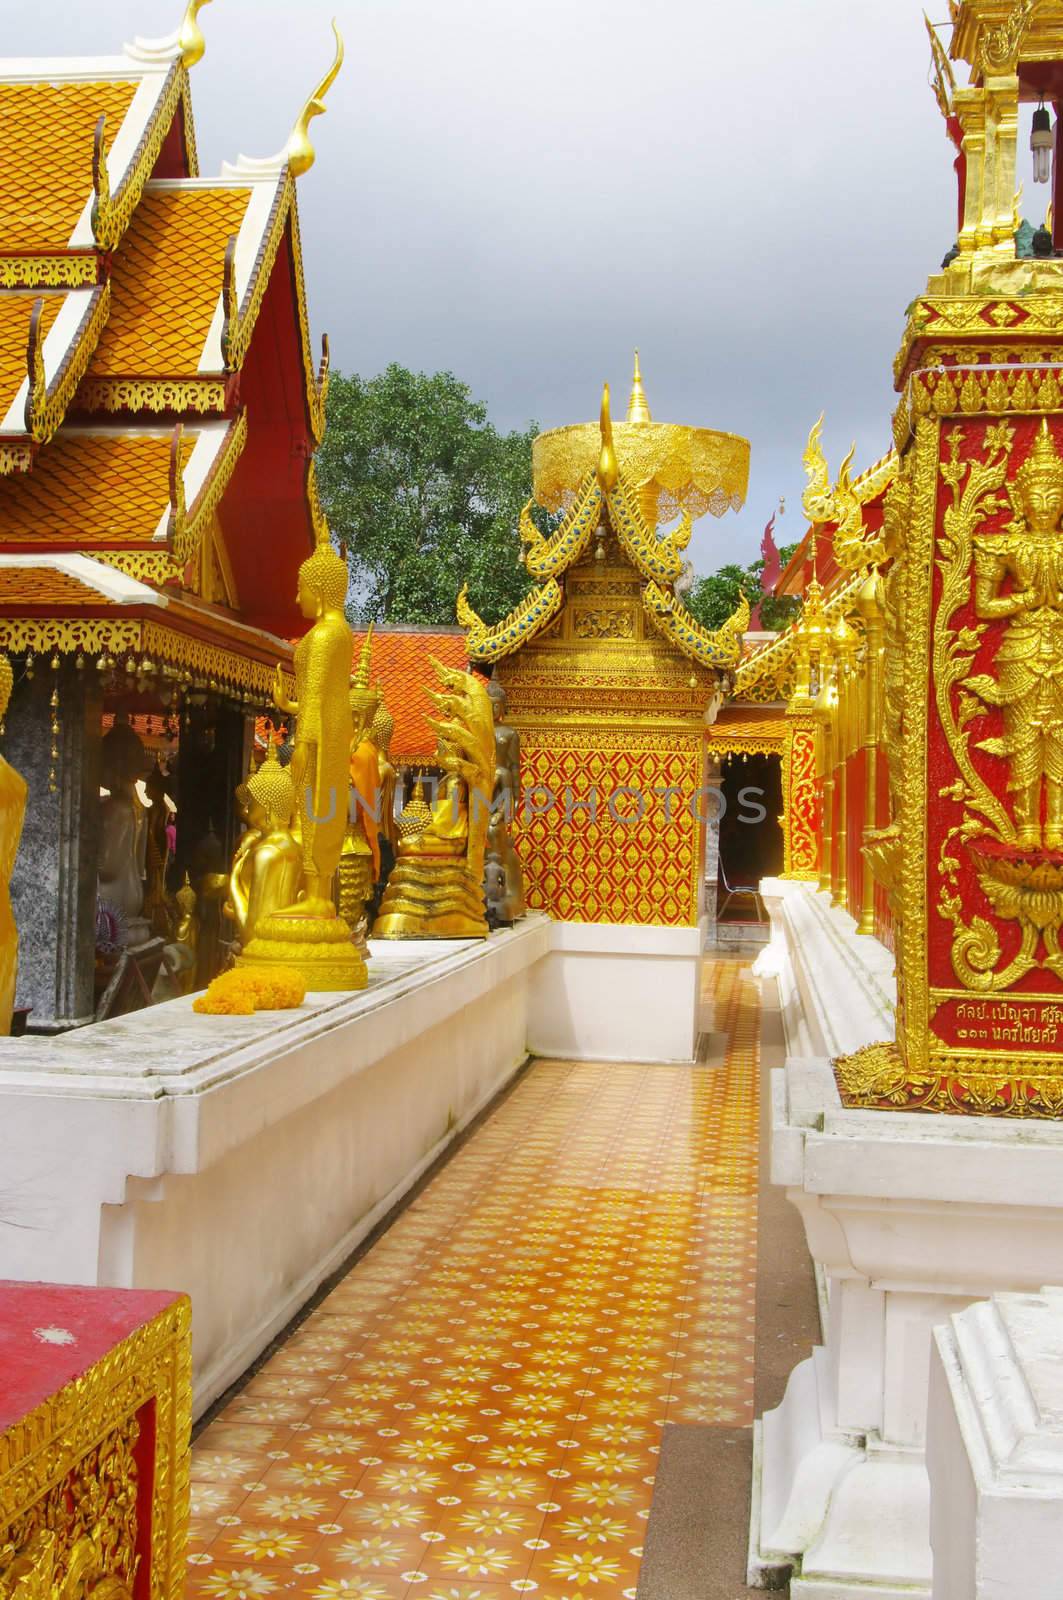 Le temple de Wat Phrathat Doi Suthep est immense . Il s’étend sur plusieurs hectares . Les fidèles doivent quitter leurs chaussures à l’entrée .Marcher pieds nus n’est pas un problème car l’ensemble du temple est carrelé .
Tout est de couleur rouge , blanc ou or étincelant .